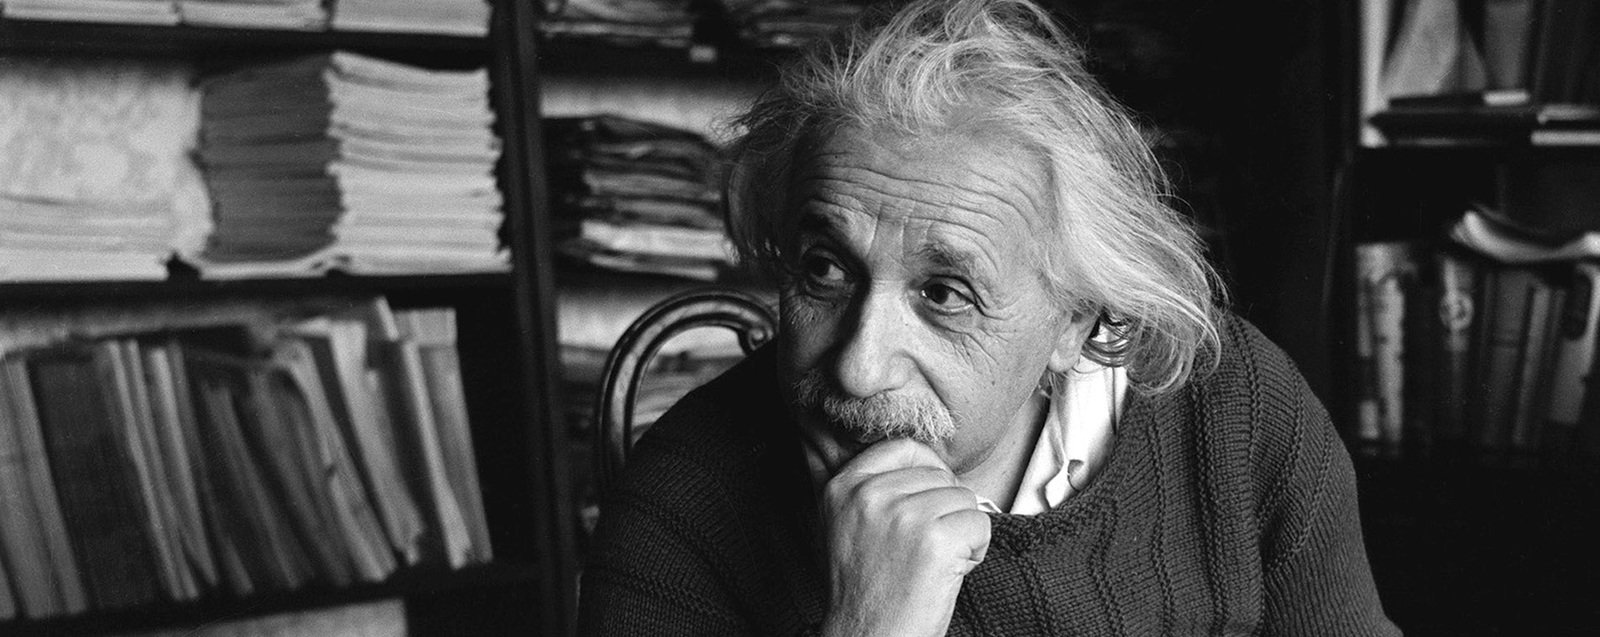 Image: Albert Einstein, c. 1937